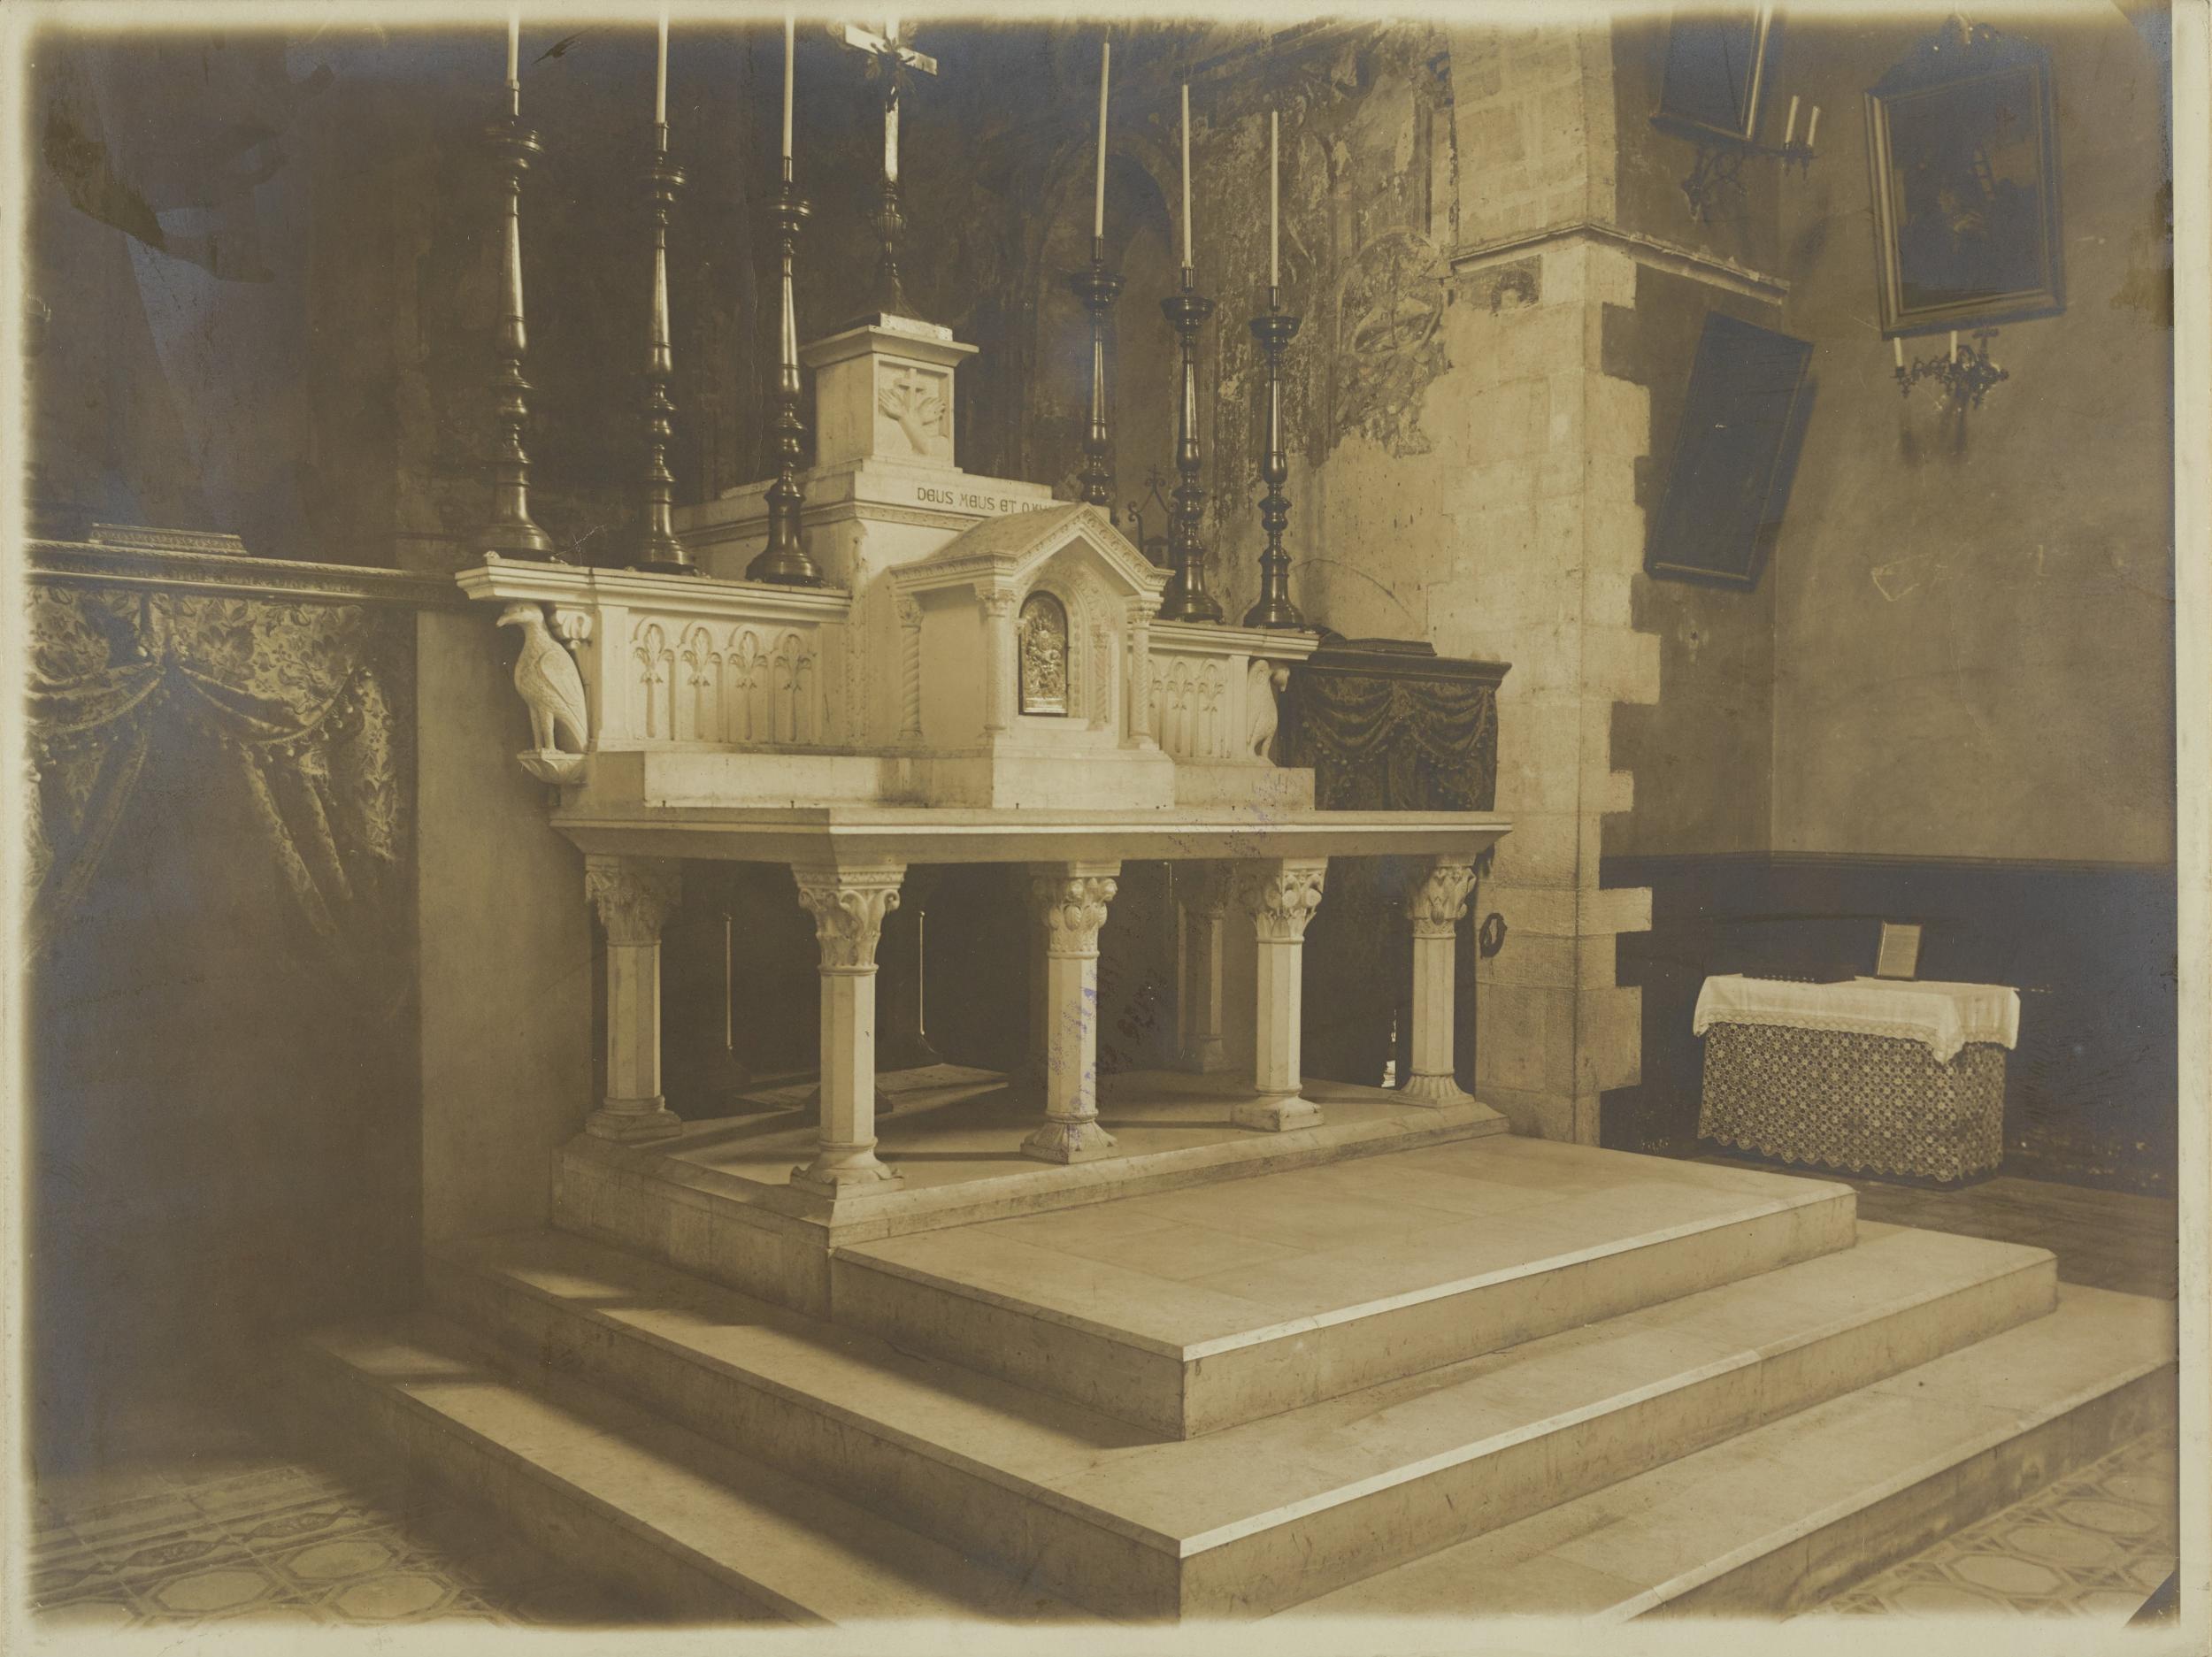 Fotografo non identificato, Bitonto - Chiesa di S. Leo, altare maggiore e dietro il coro, 1891-1900, gelatina ai sali d'argento/carta, MPI137901